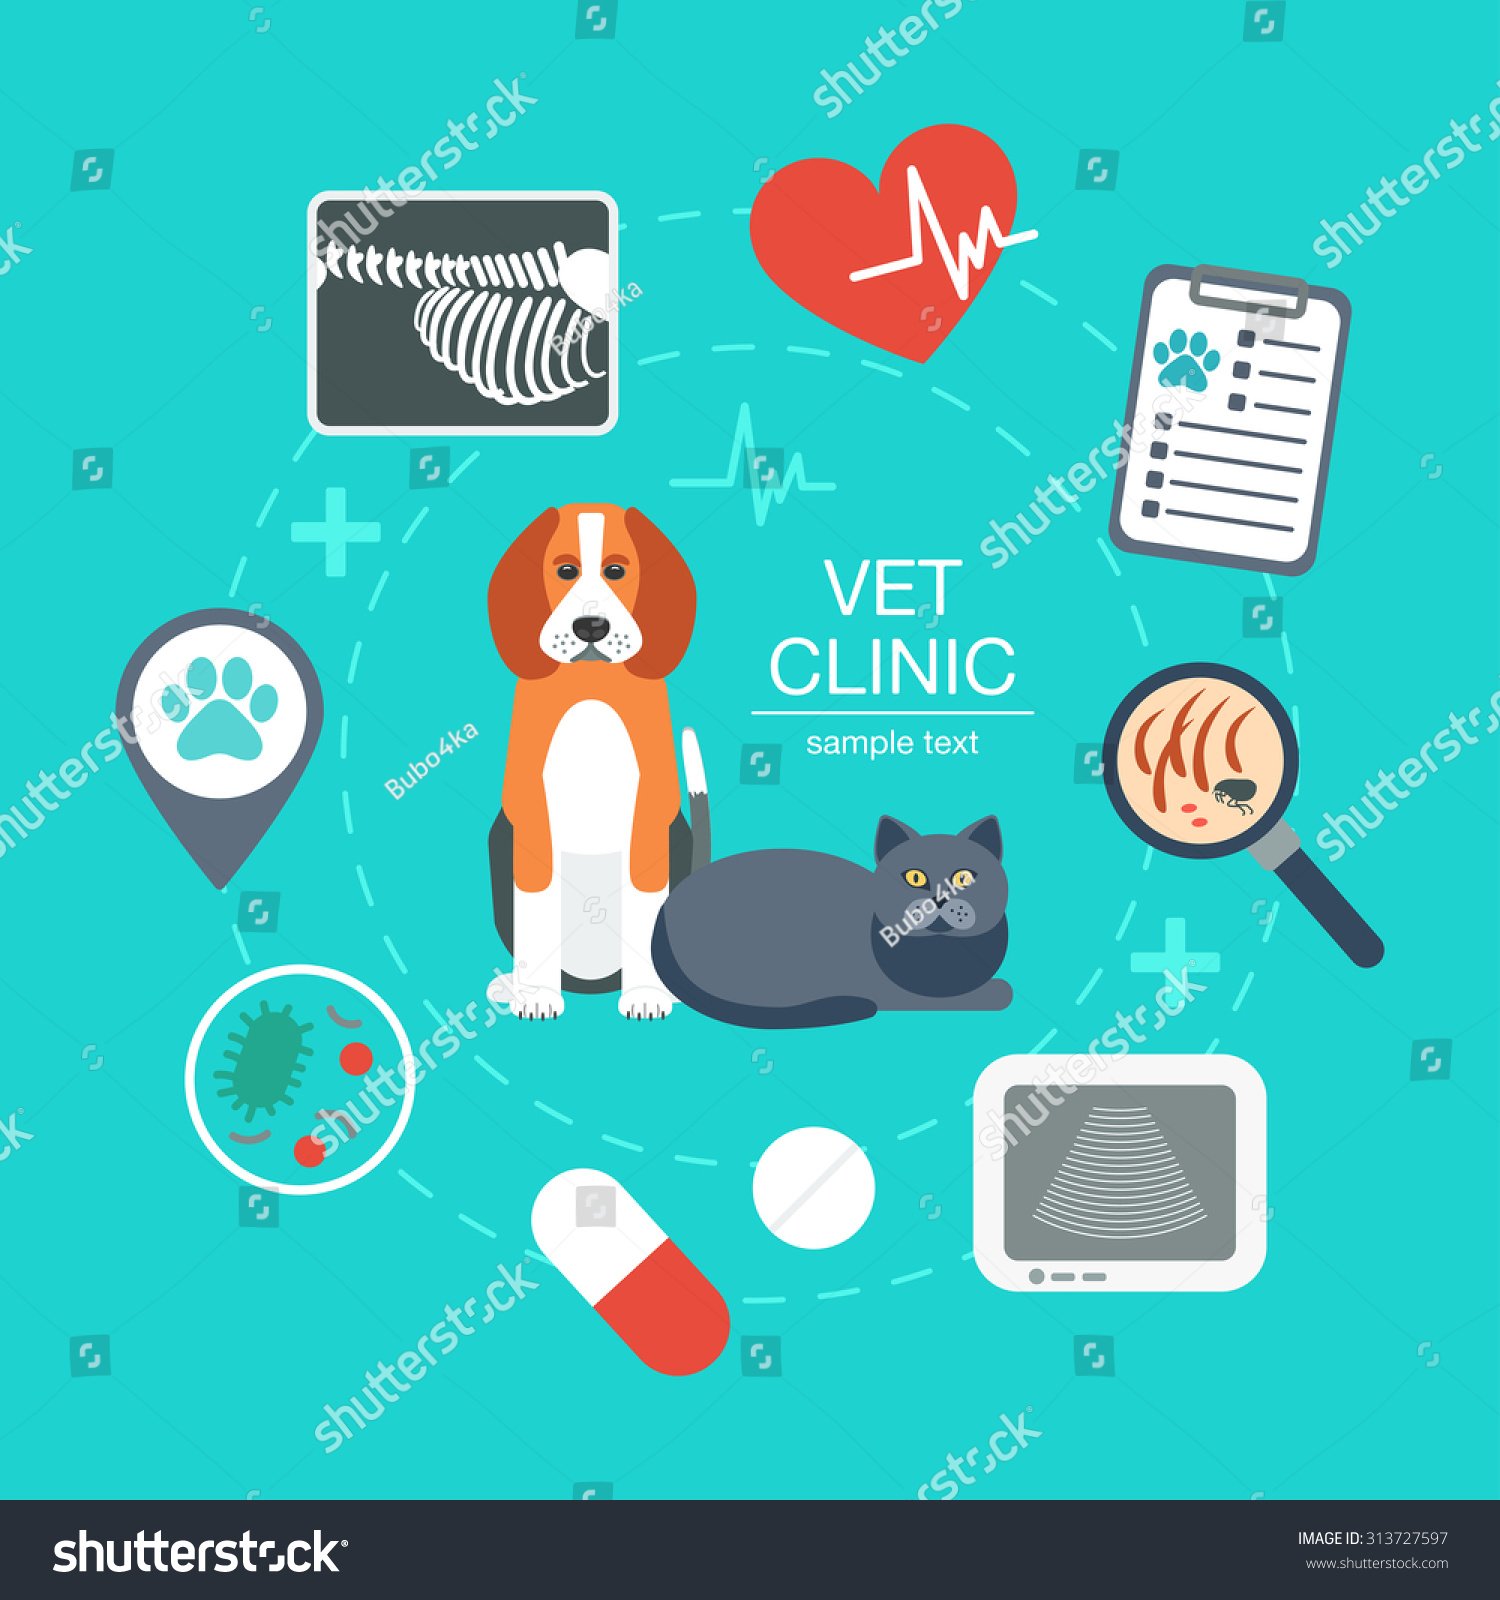 Постеры для ветеринарной клиники